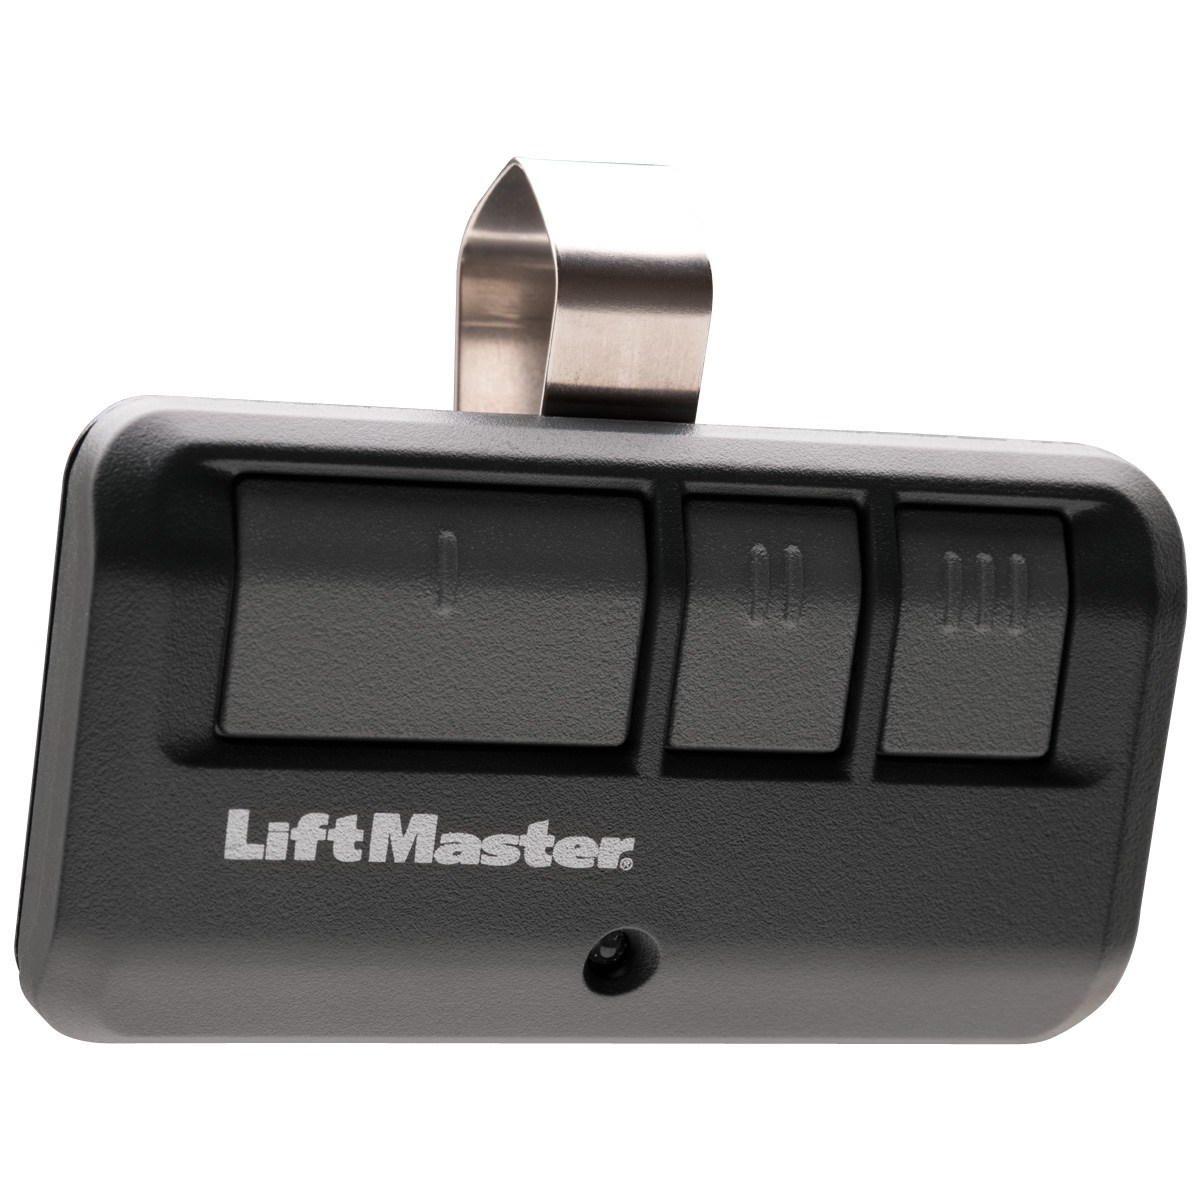 LiftMaster Opener – 8355 garage doors